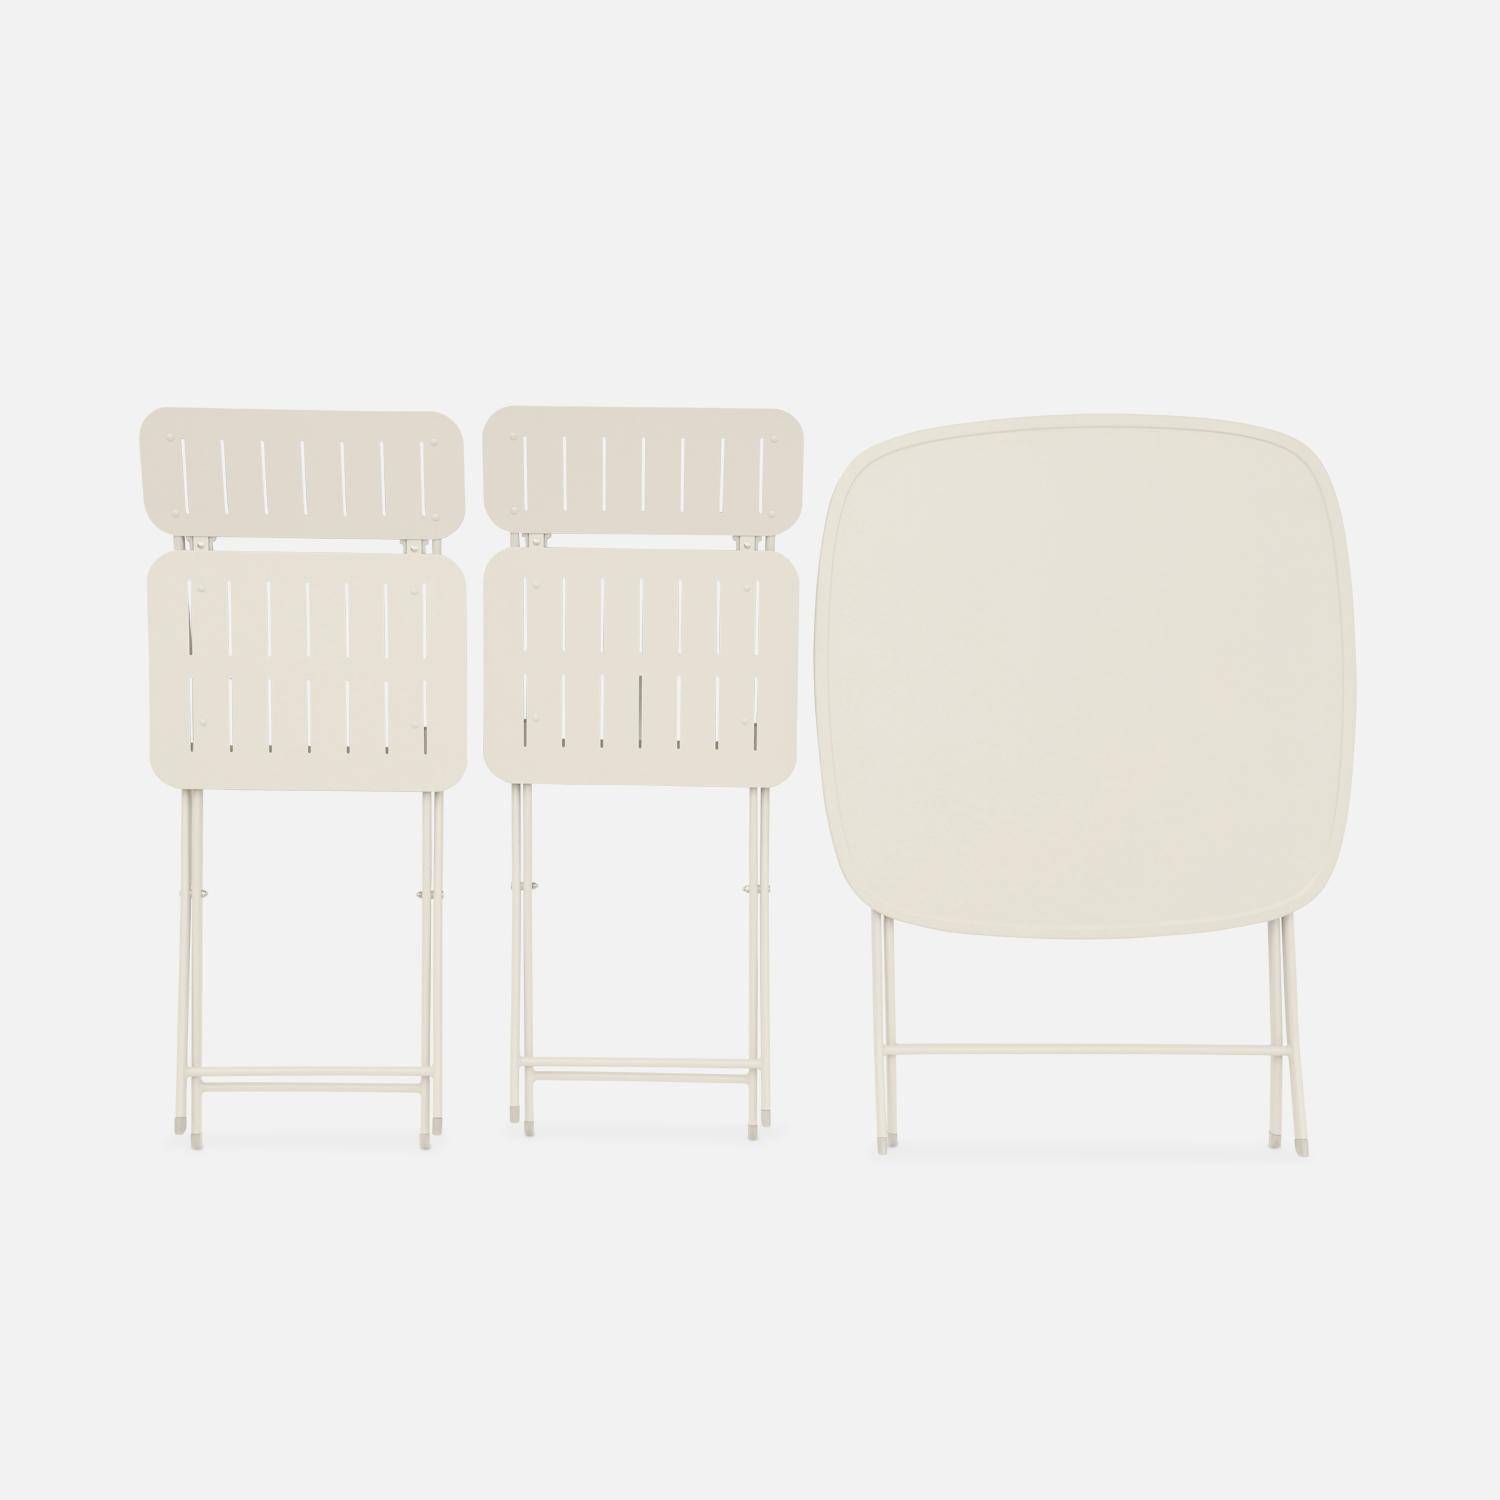 Table de jardin type bistrot pliable beige avec 2 chaises également pliables en acier galvanisé robuste,sweeek,Photo4